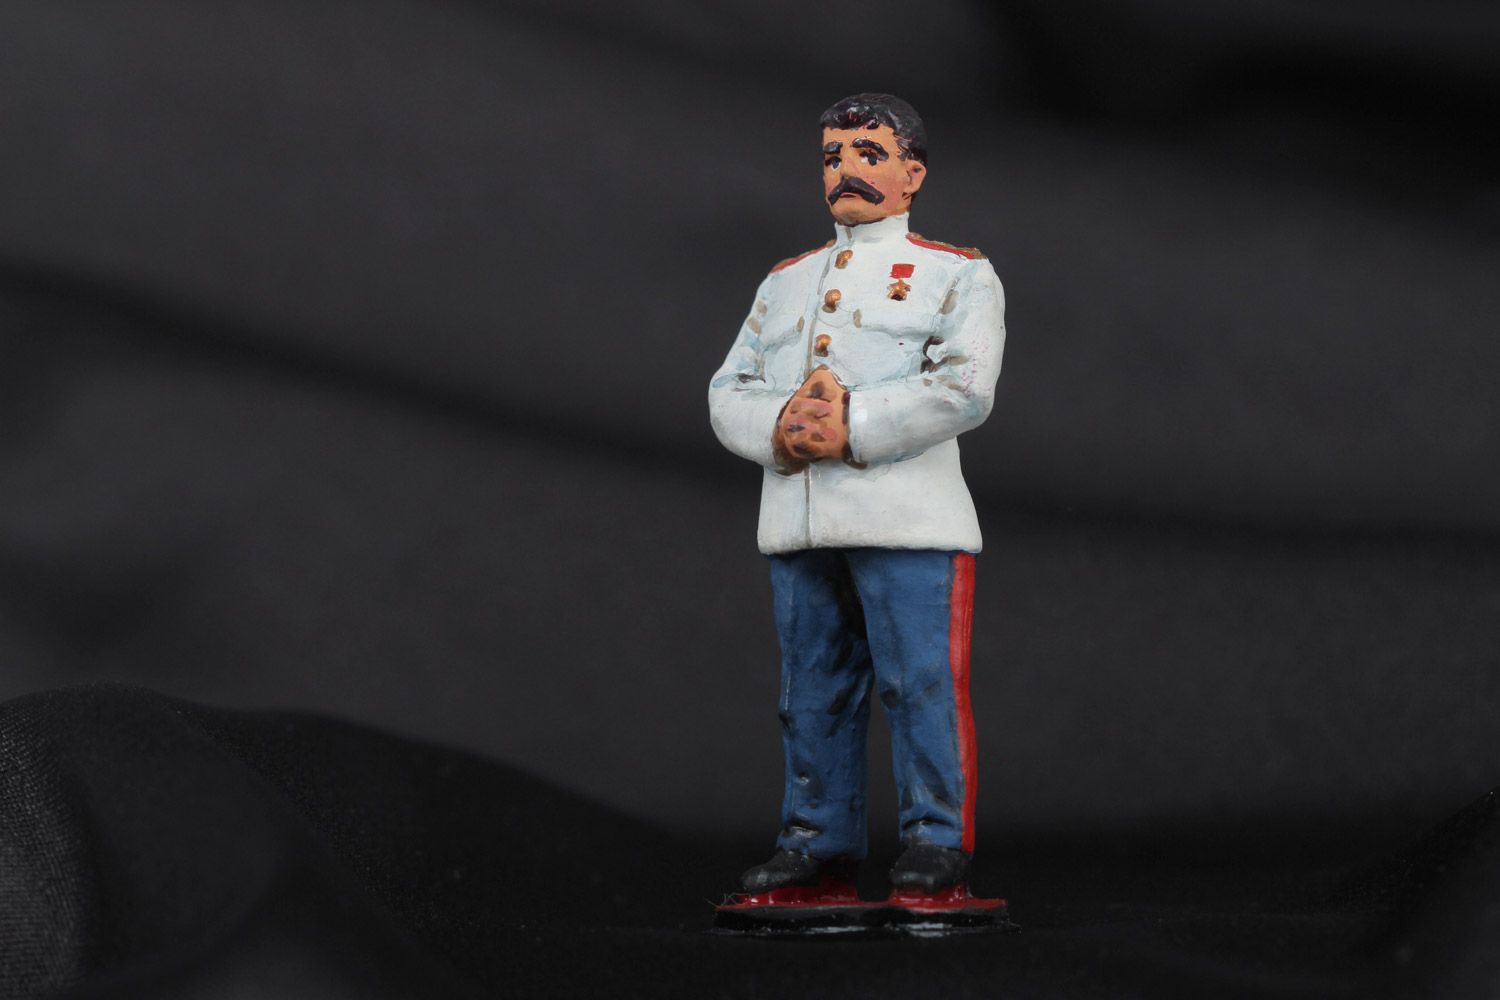 Фигурка Сталина из олова литая расписанная акриловыми красками ручная работа фото 1